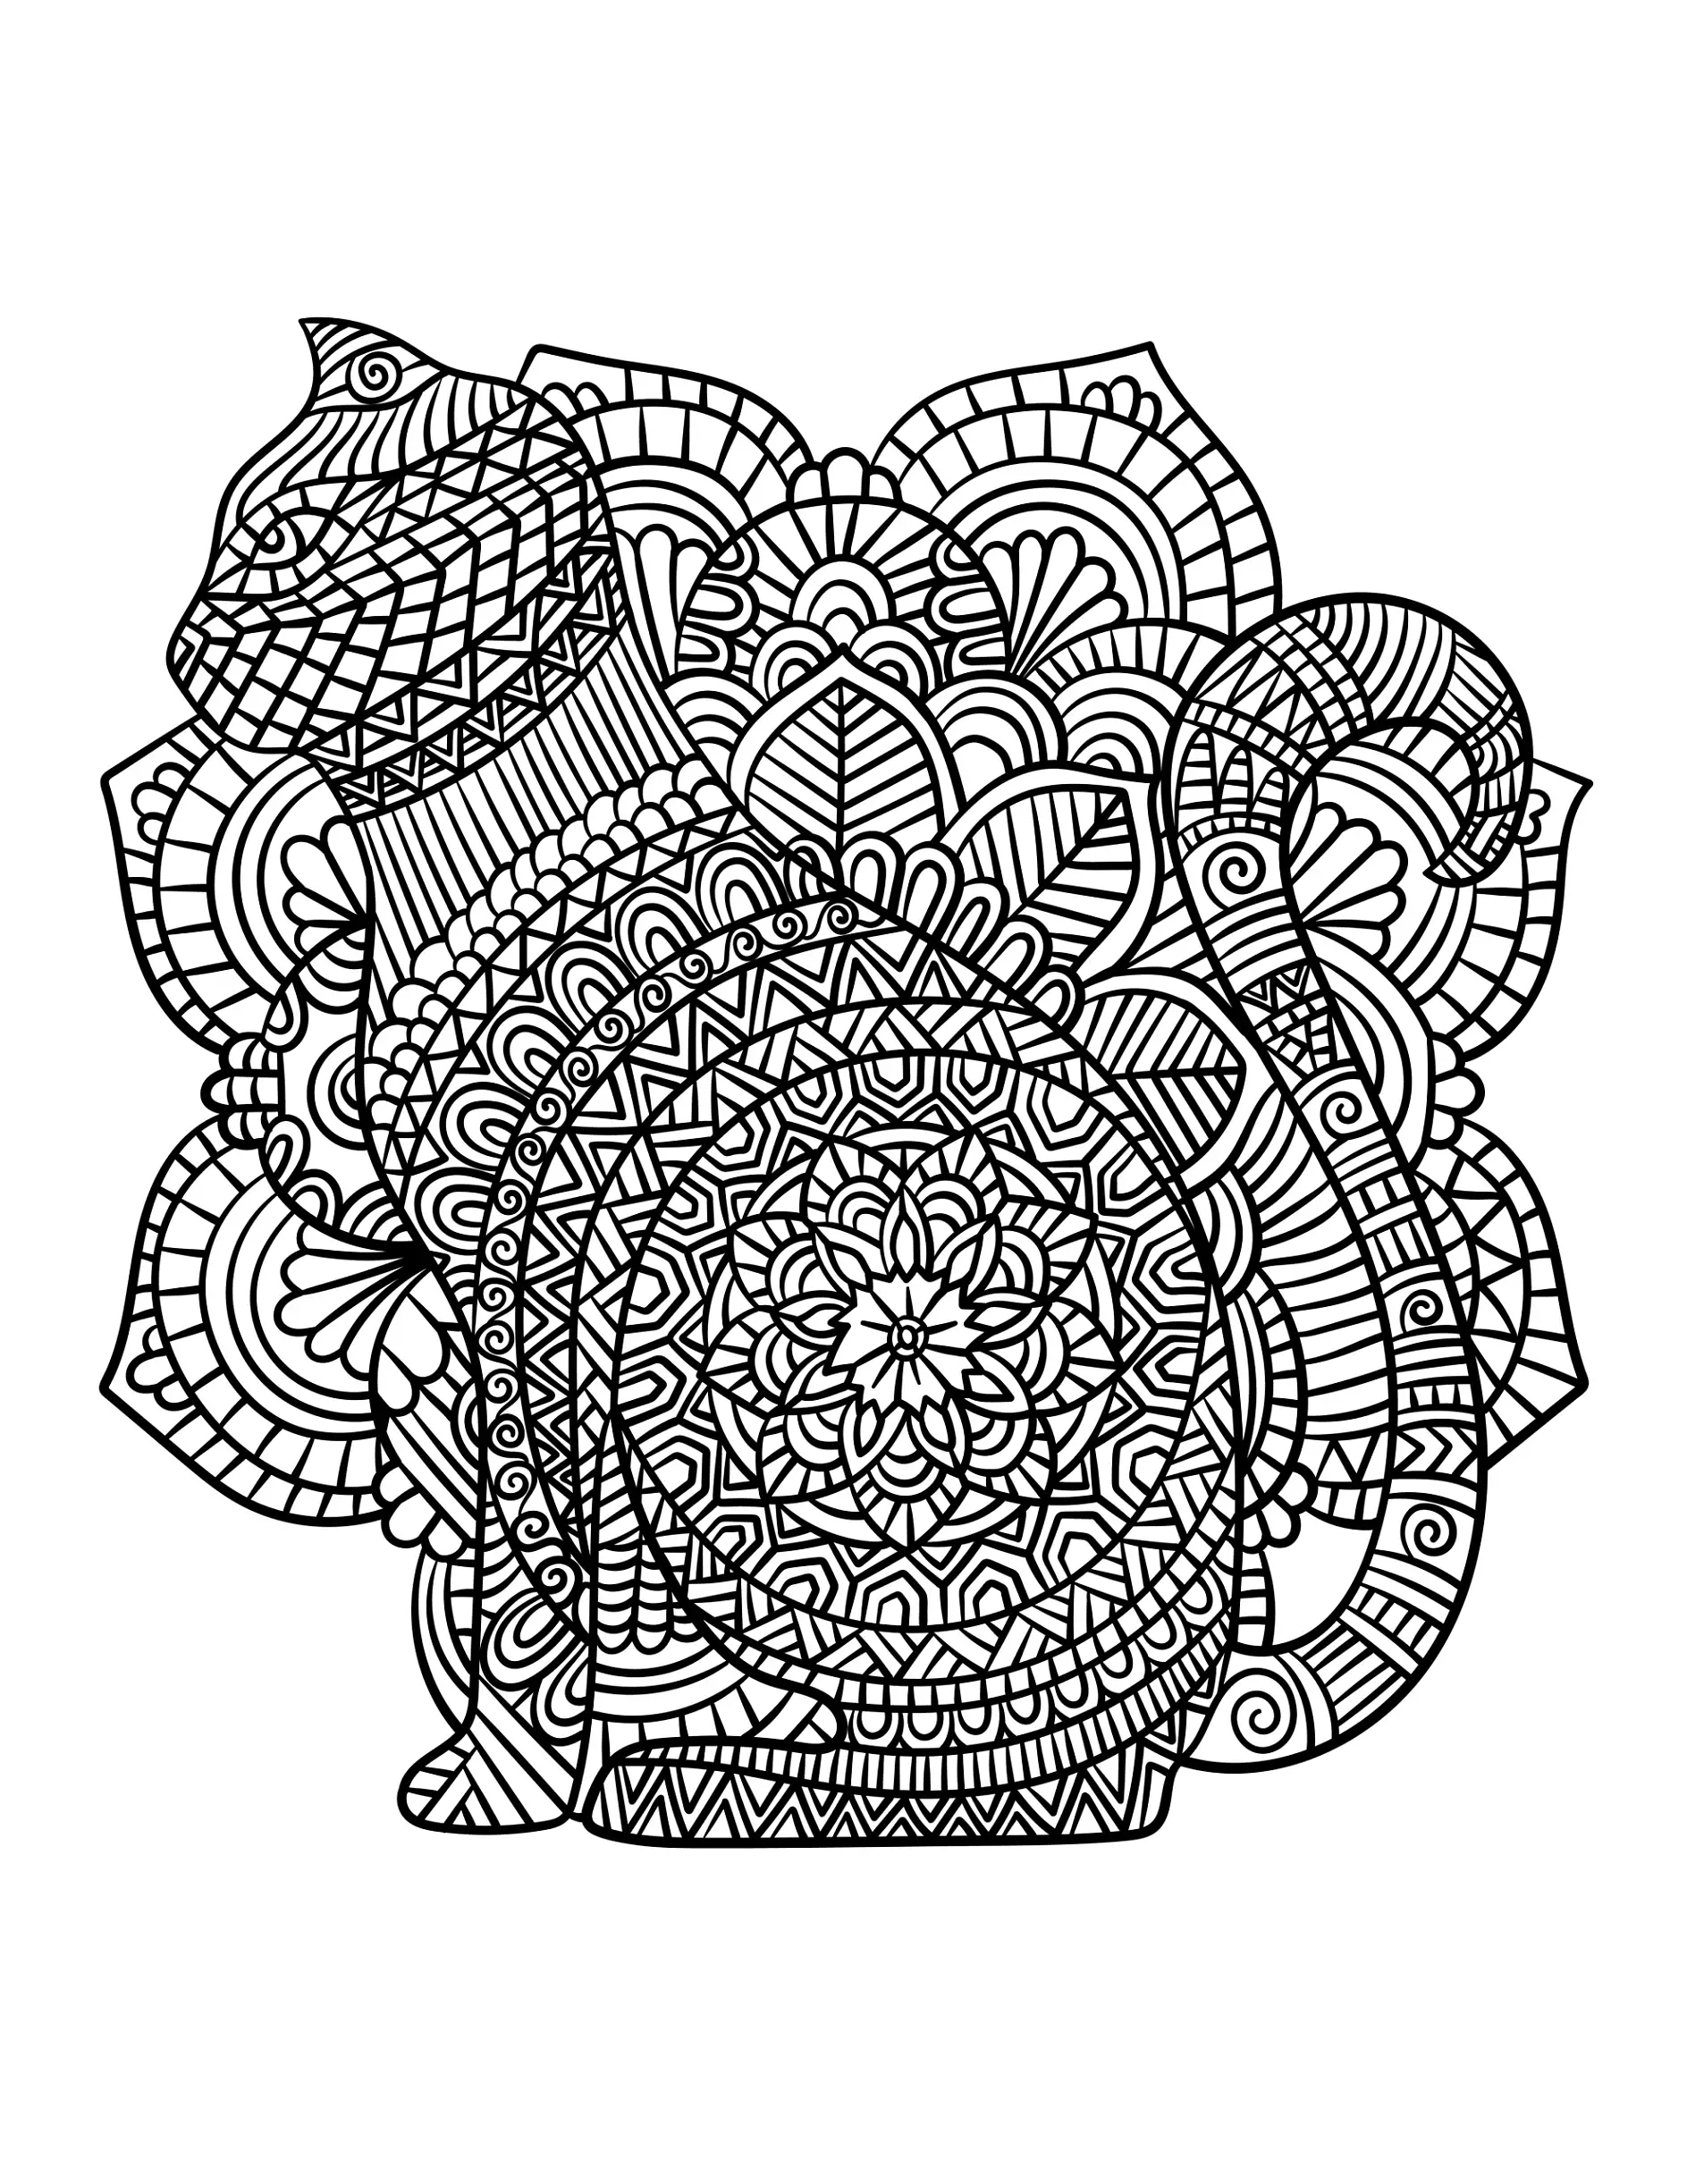 Ausmalbild Mandala mit Katze und detaillierten Mustern